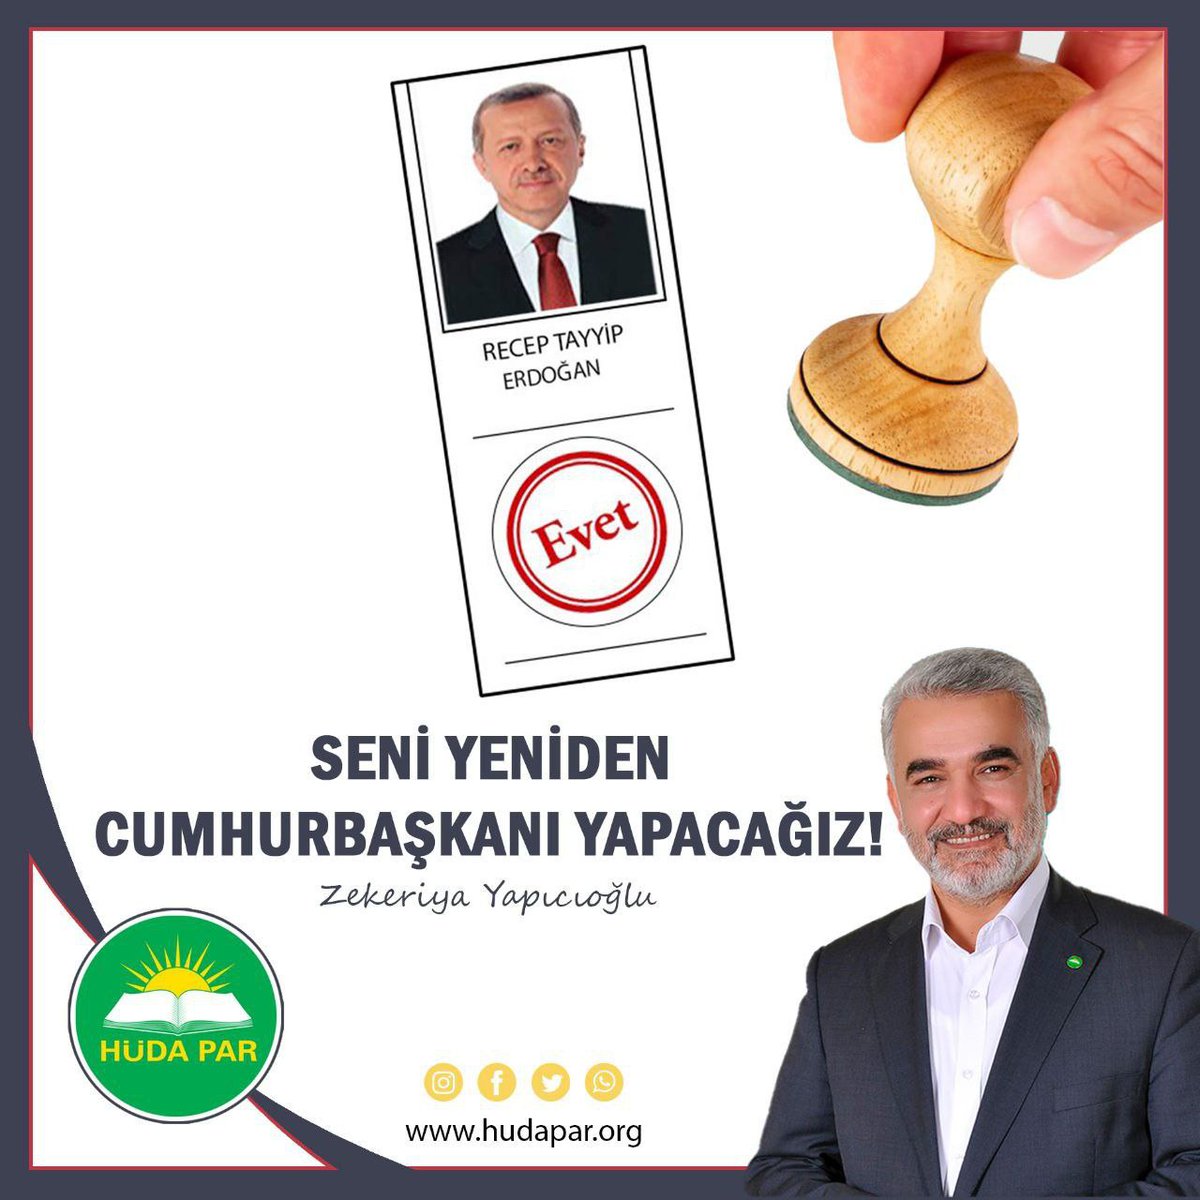 Yeniden başkan yaptık 👌

Recep Tayyip Erdoğan Kemal Kılıçdaroğlu dolar seçim adam kazandı